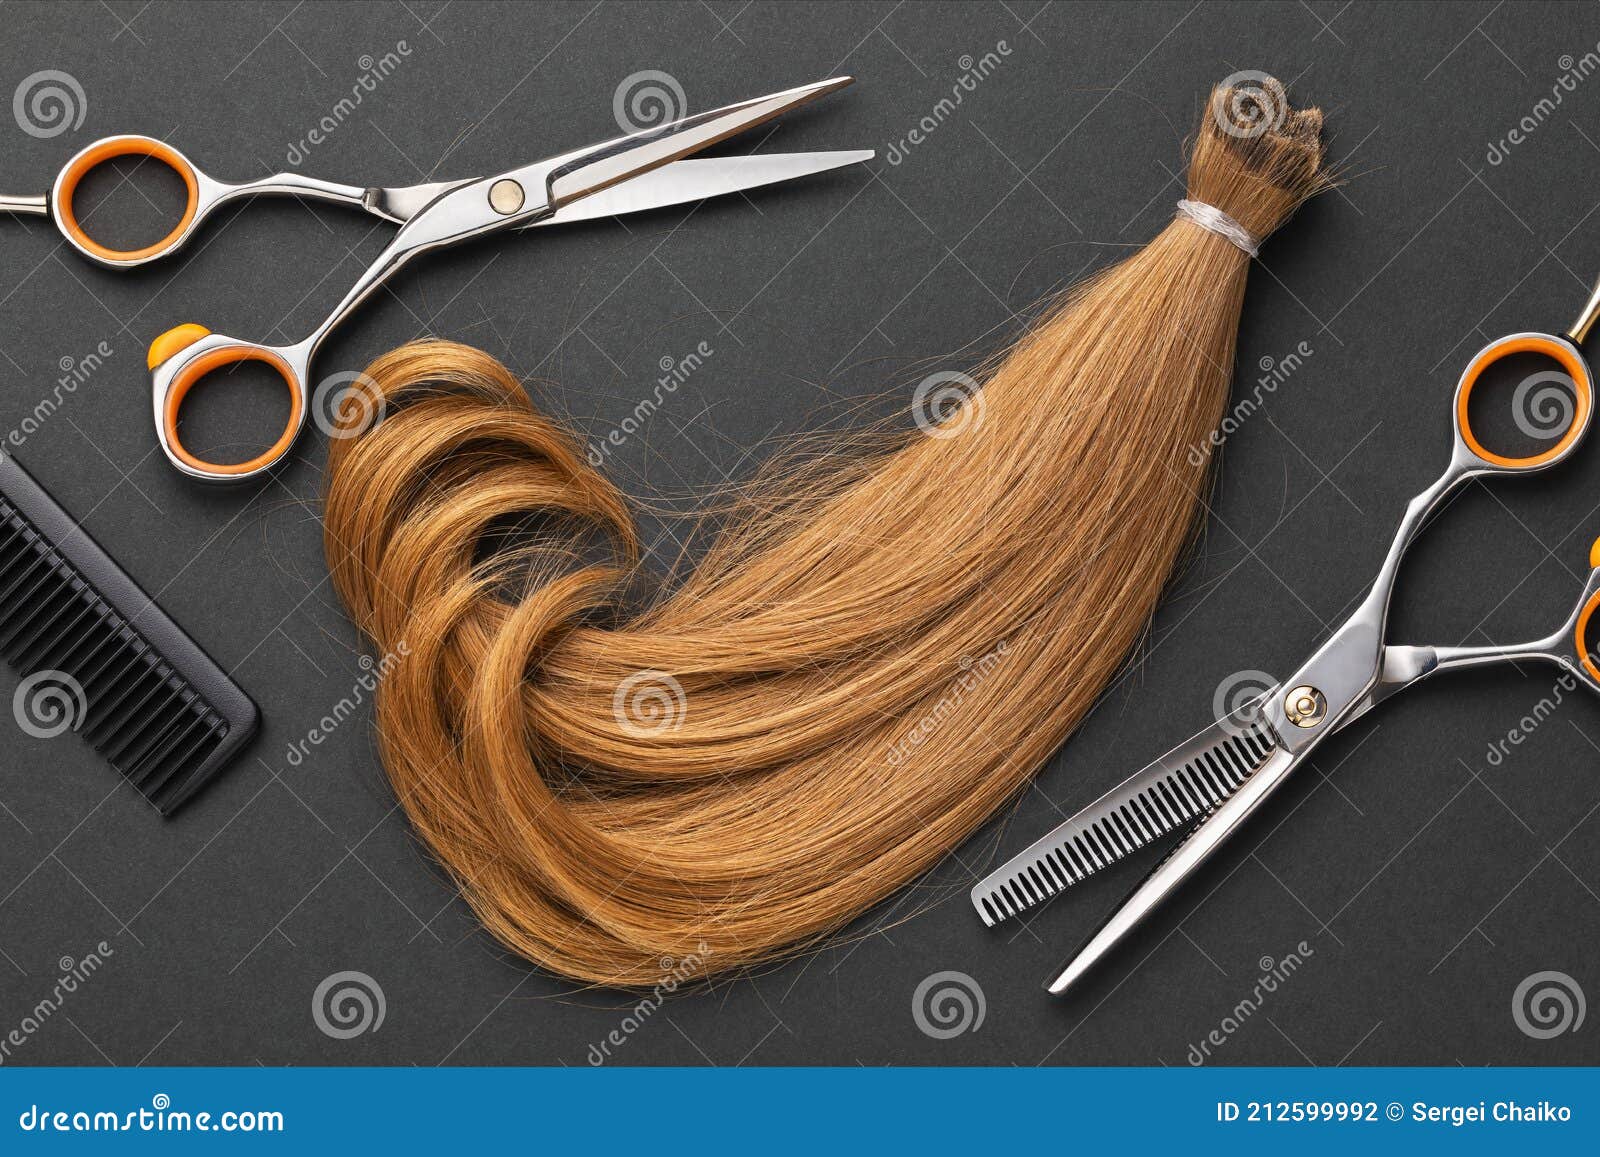 Lindo cabelo loiro e vista superior da tesoura de cabeleireiro aberta